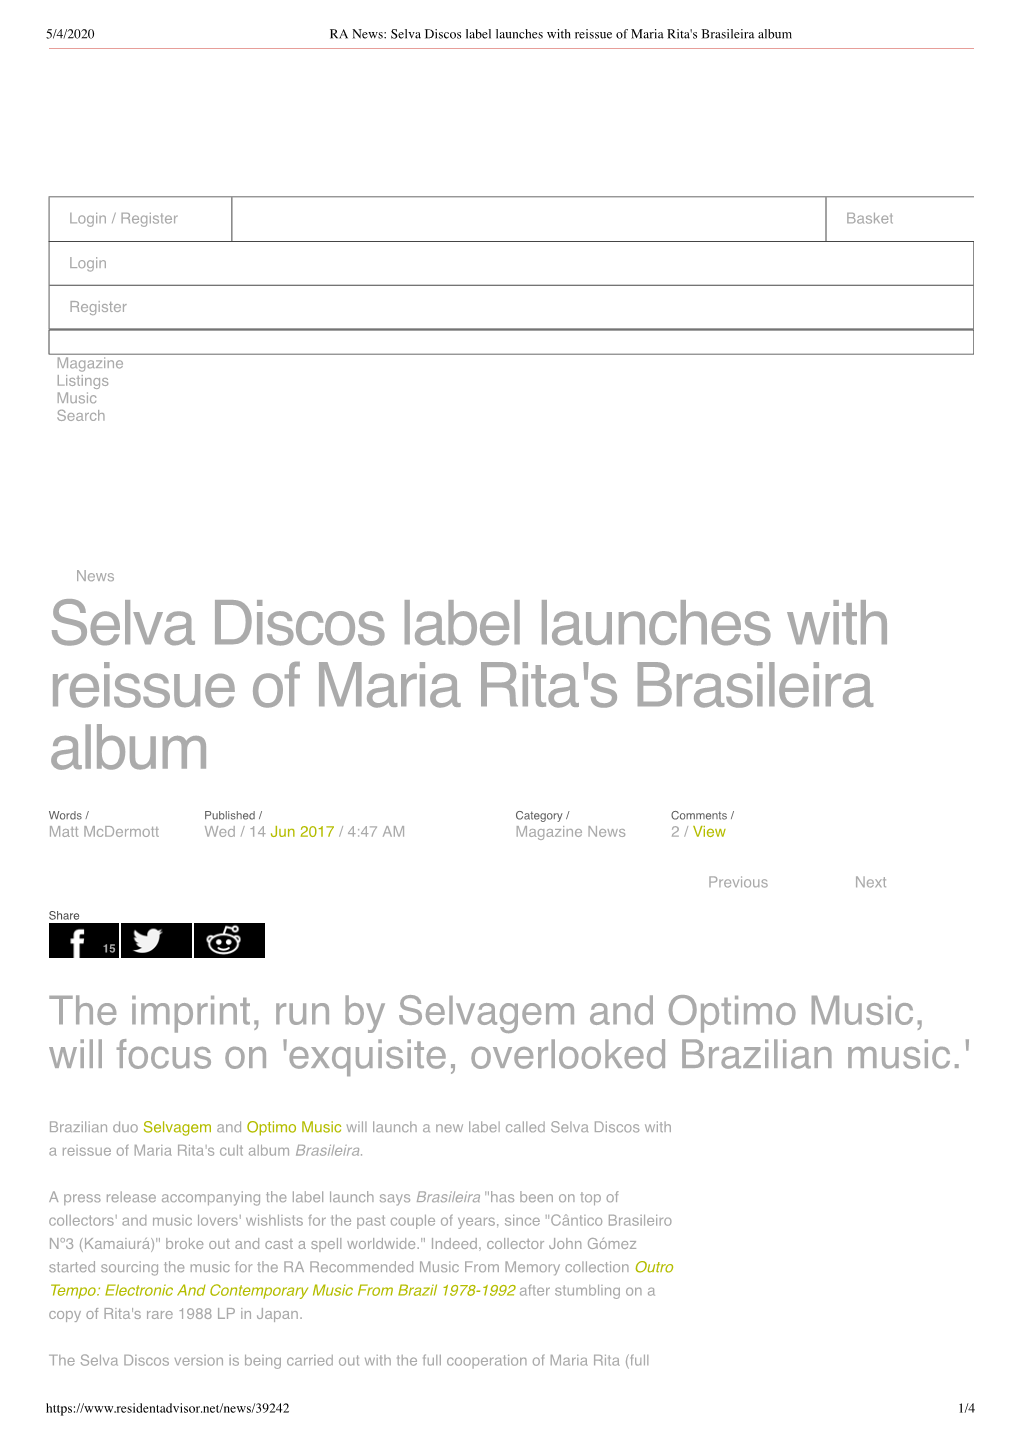 Selva Discos Label Launches with Reissue of Maria Rita's Brasileira Album